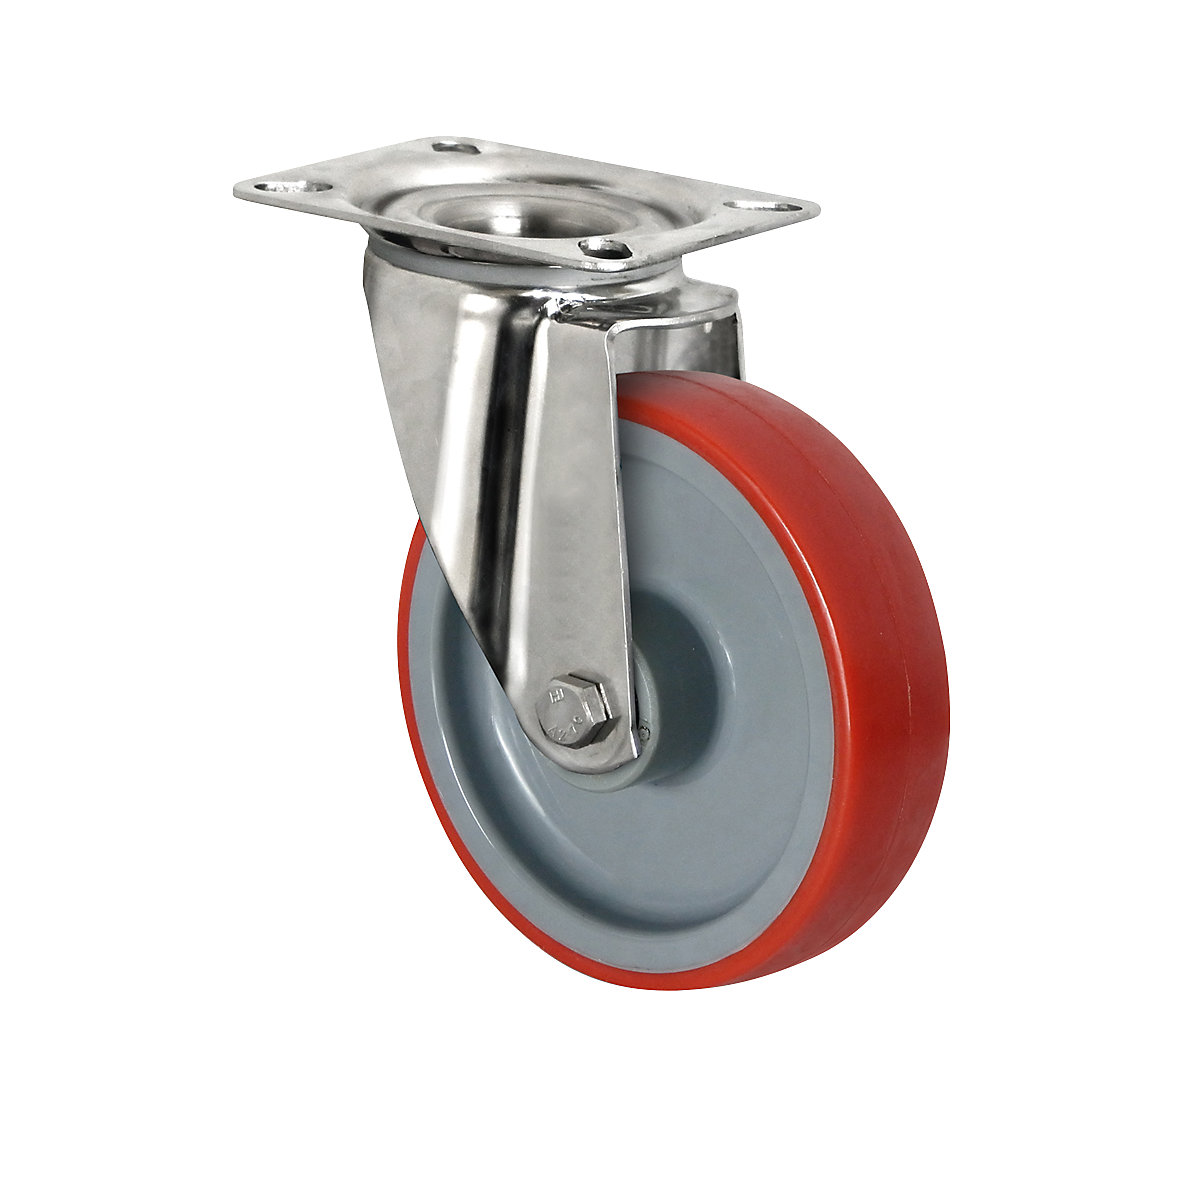 Roulette polyuréthane sur jante polyamide – eurokraft basic, Ø x largeur roue 160 x 50 mm, à partir de 2 pièces, roulette pivotante